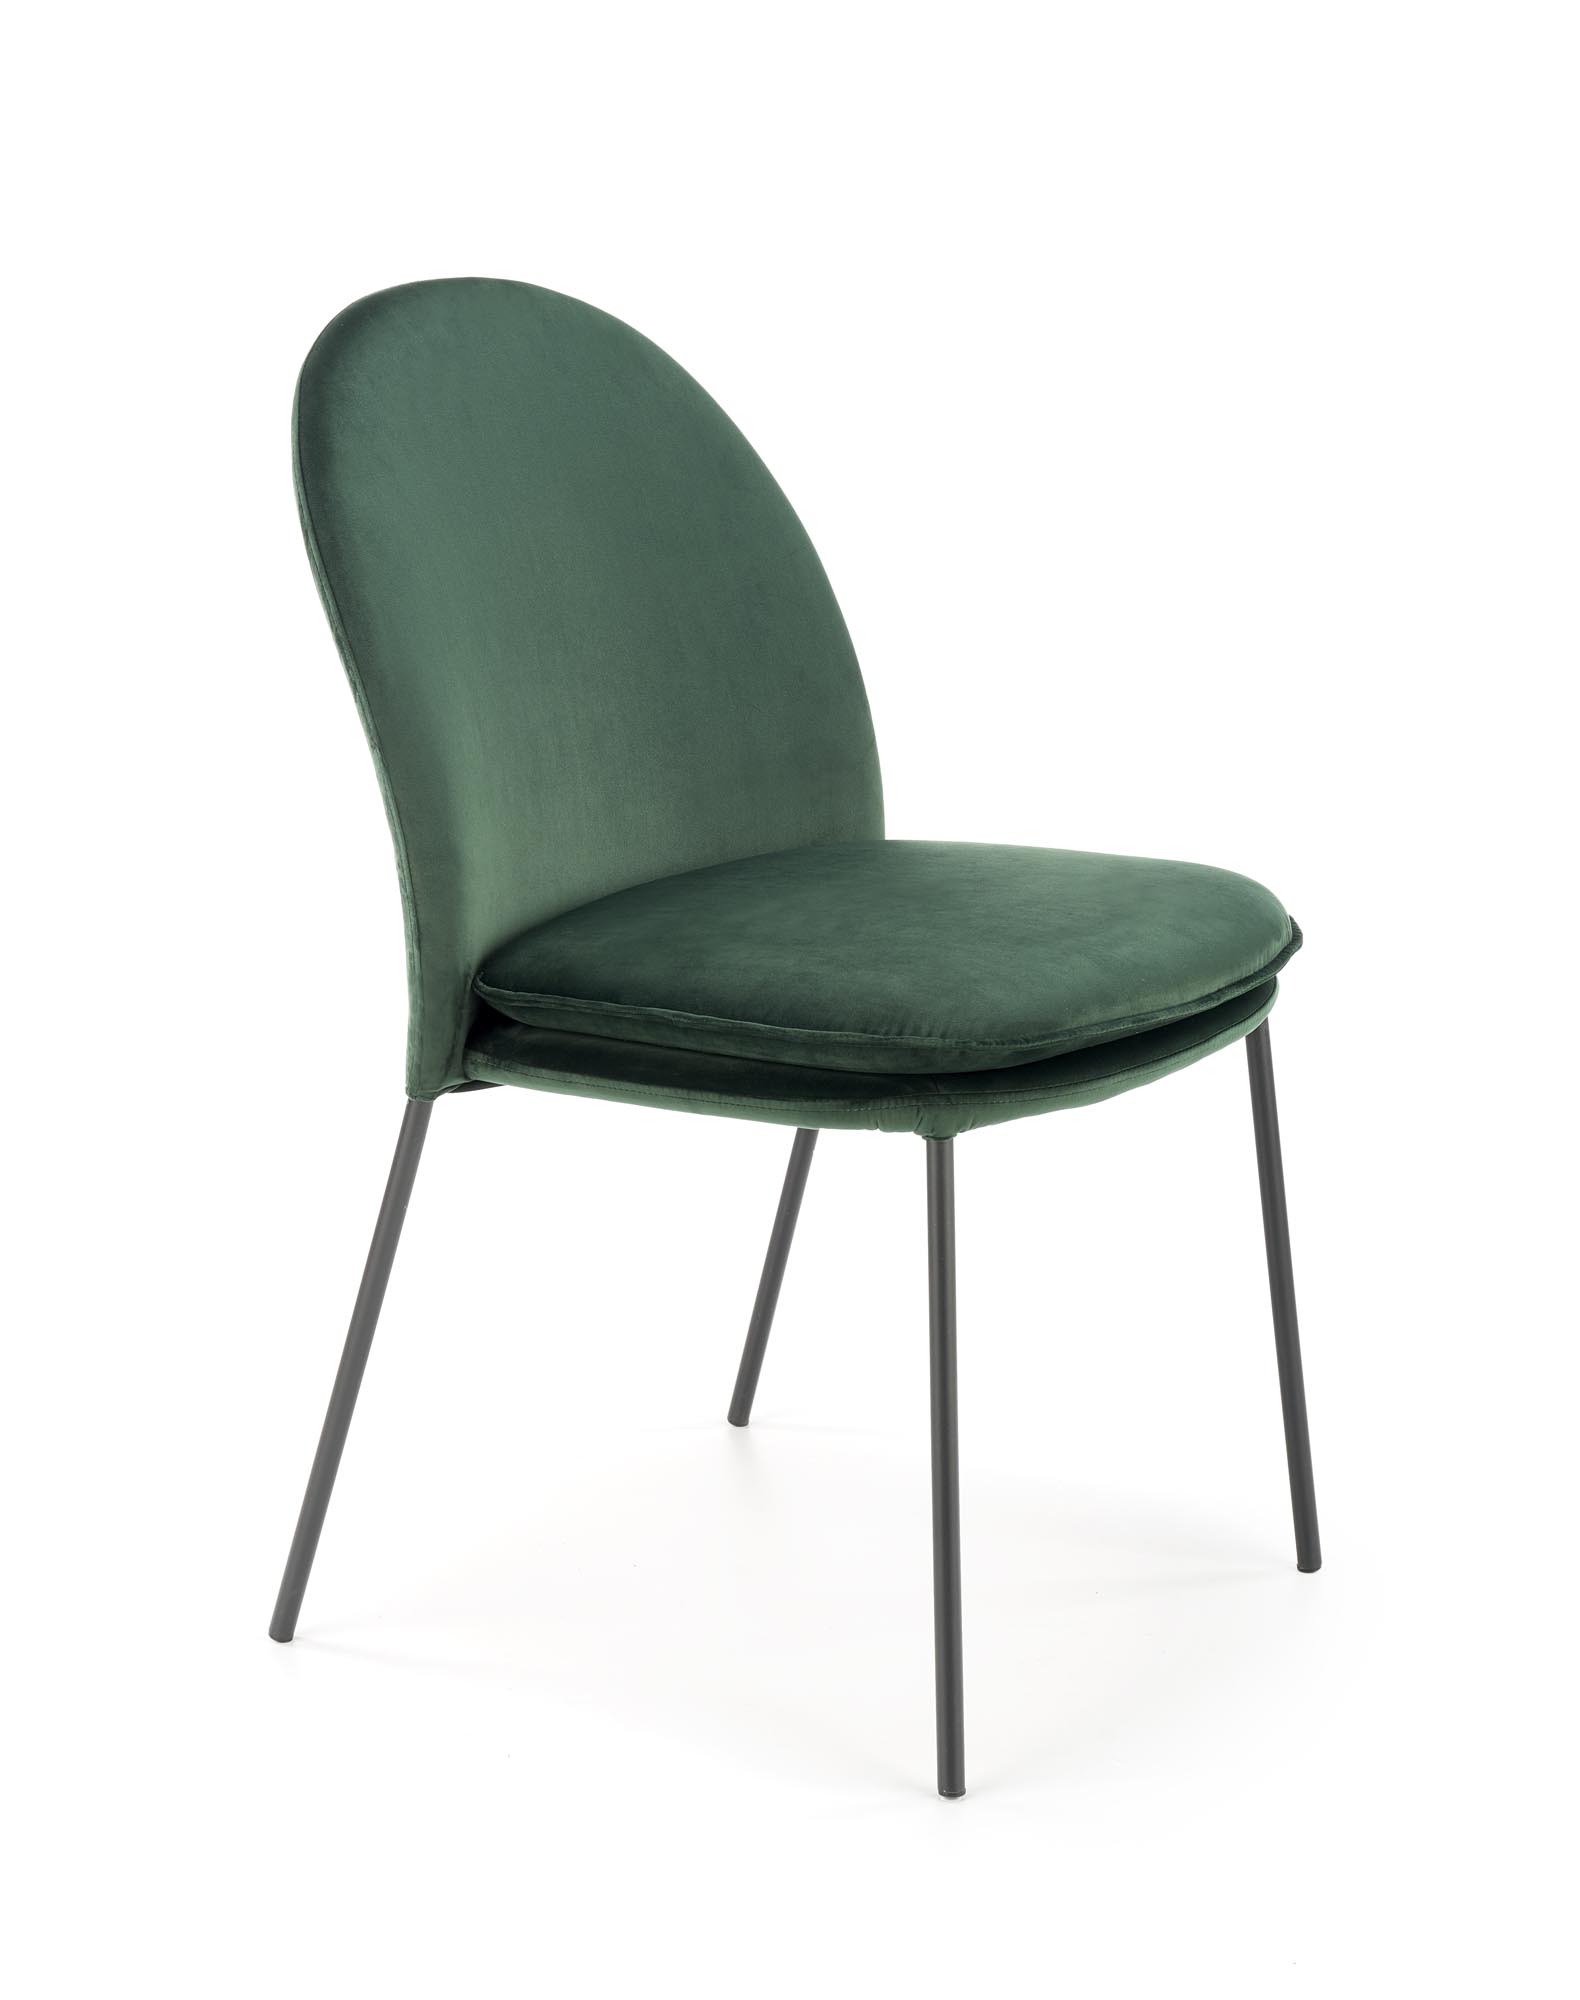 K443 krzesło ciemny zielony k443 krzesło ciemny zielony